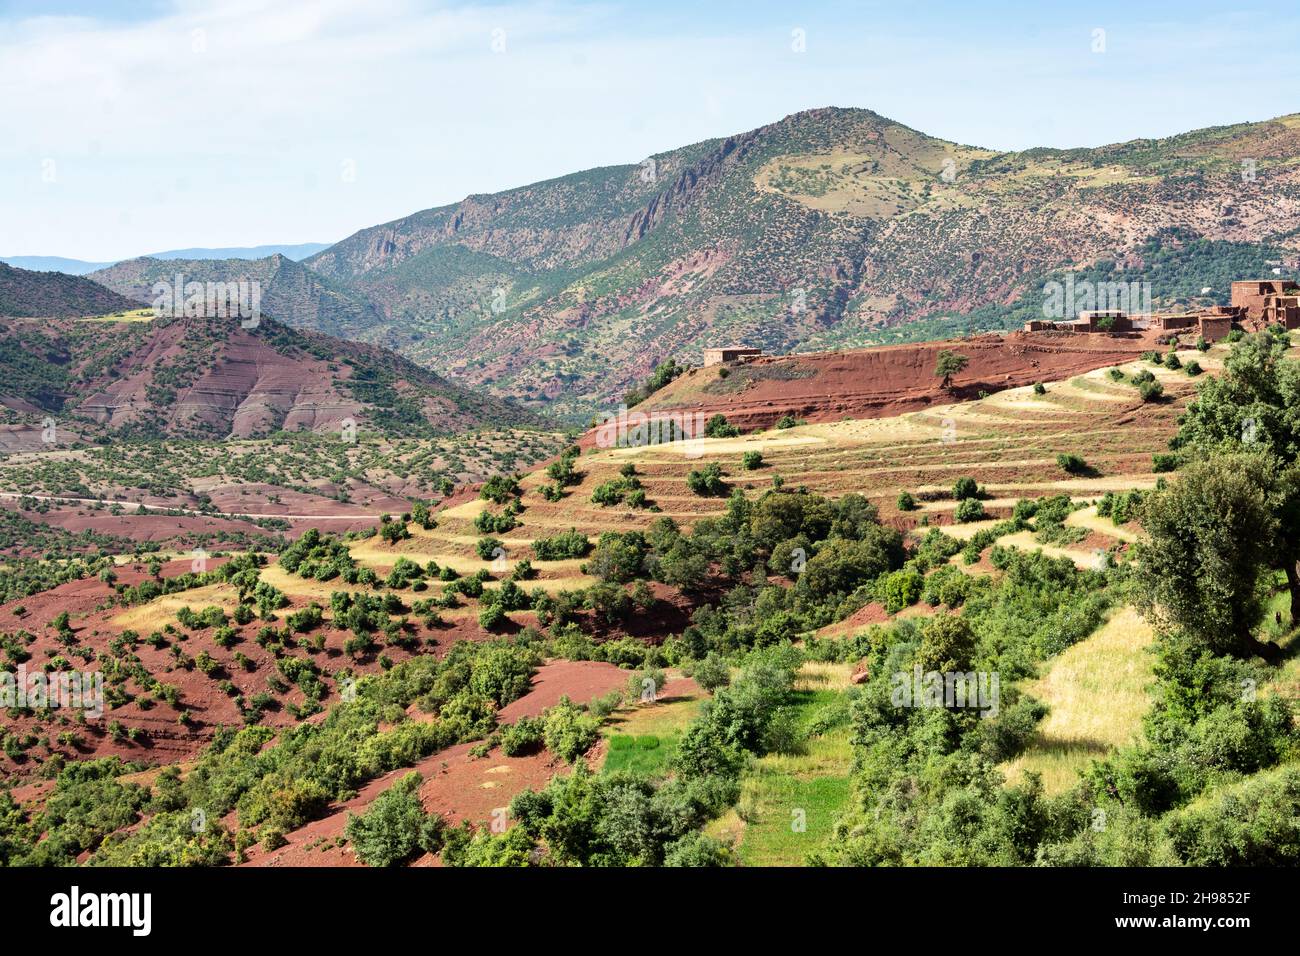 Nelle montagne dell'Atlante in Marocco. Un paese e un'azienda agricola dominano le colture terrazzate sulle pendici della valle dell'Ait Boulli Foto Stock